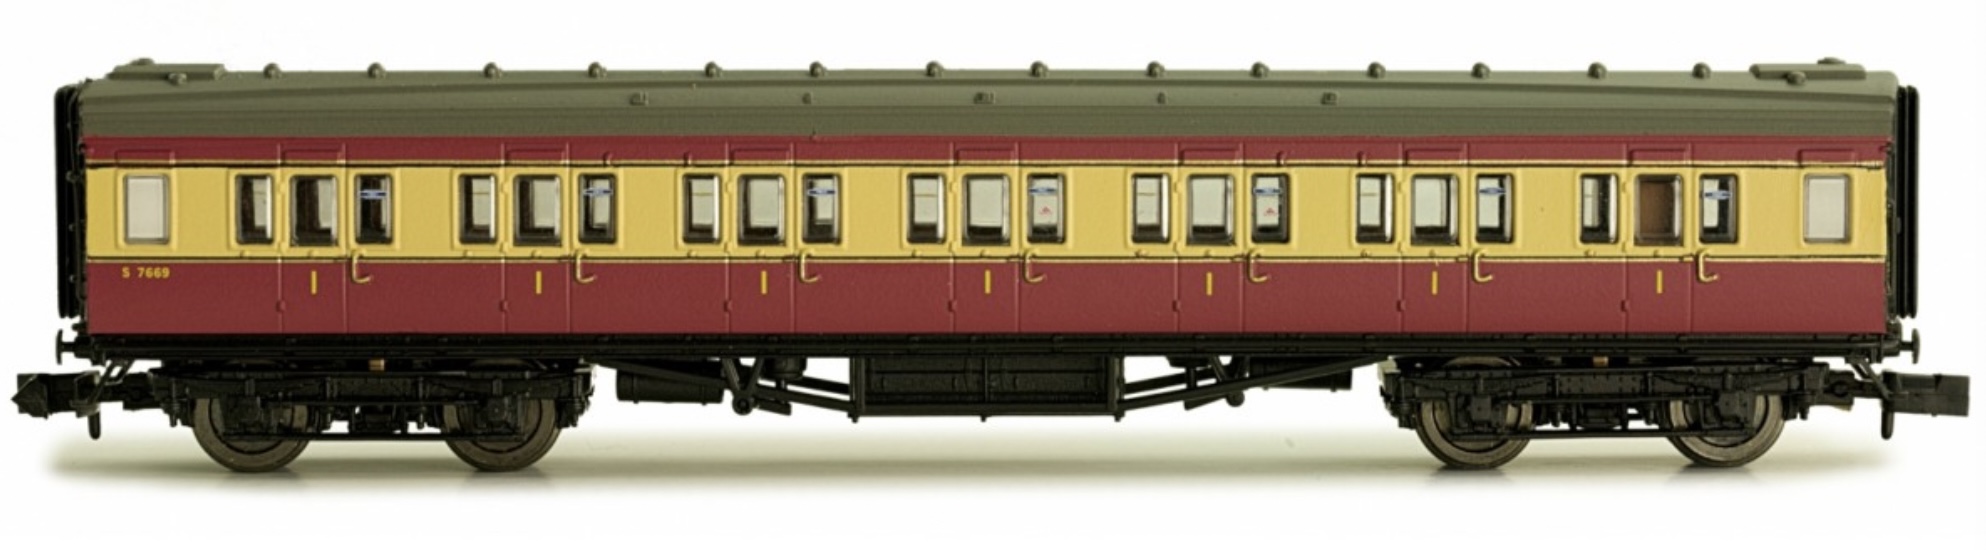 N Scale - Dapol - 2P-012-600 - Passenger Car, Coach, Maunsell, 1st Class - British Rail - 7669